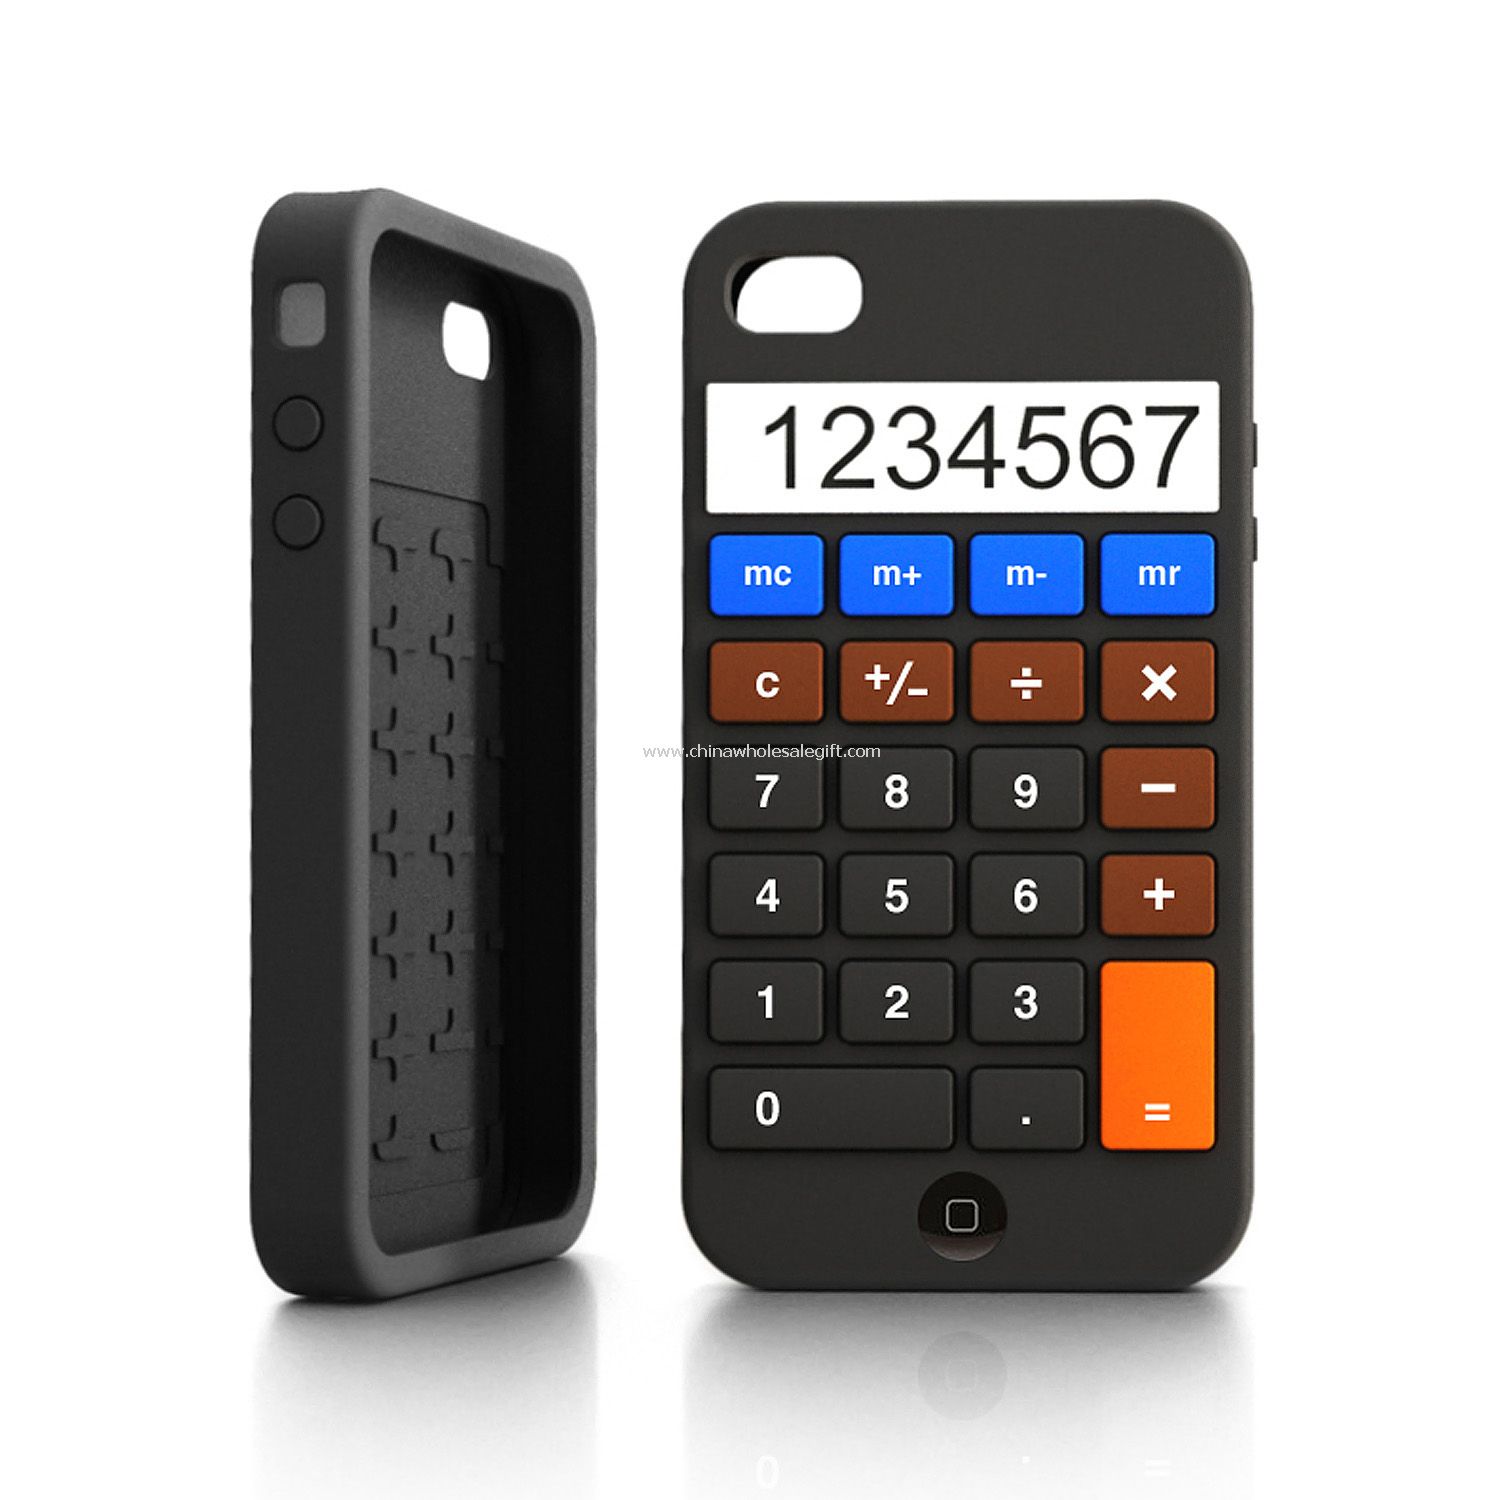 Calculator iPhone 4 cases